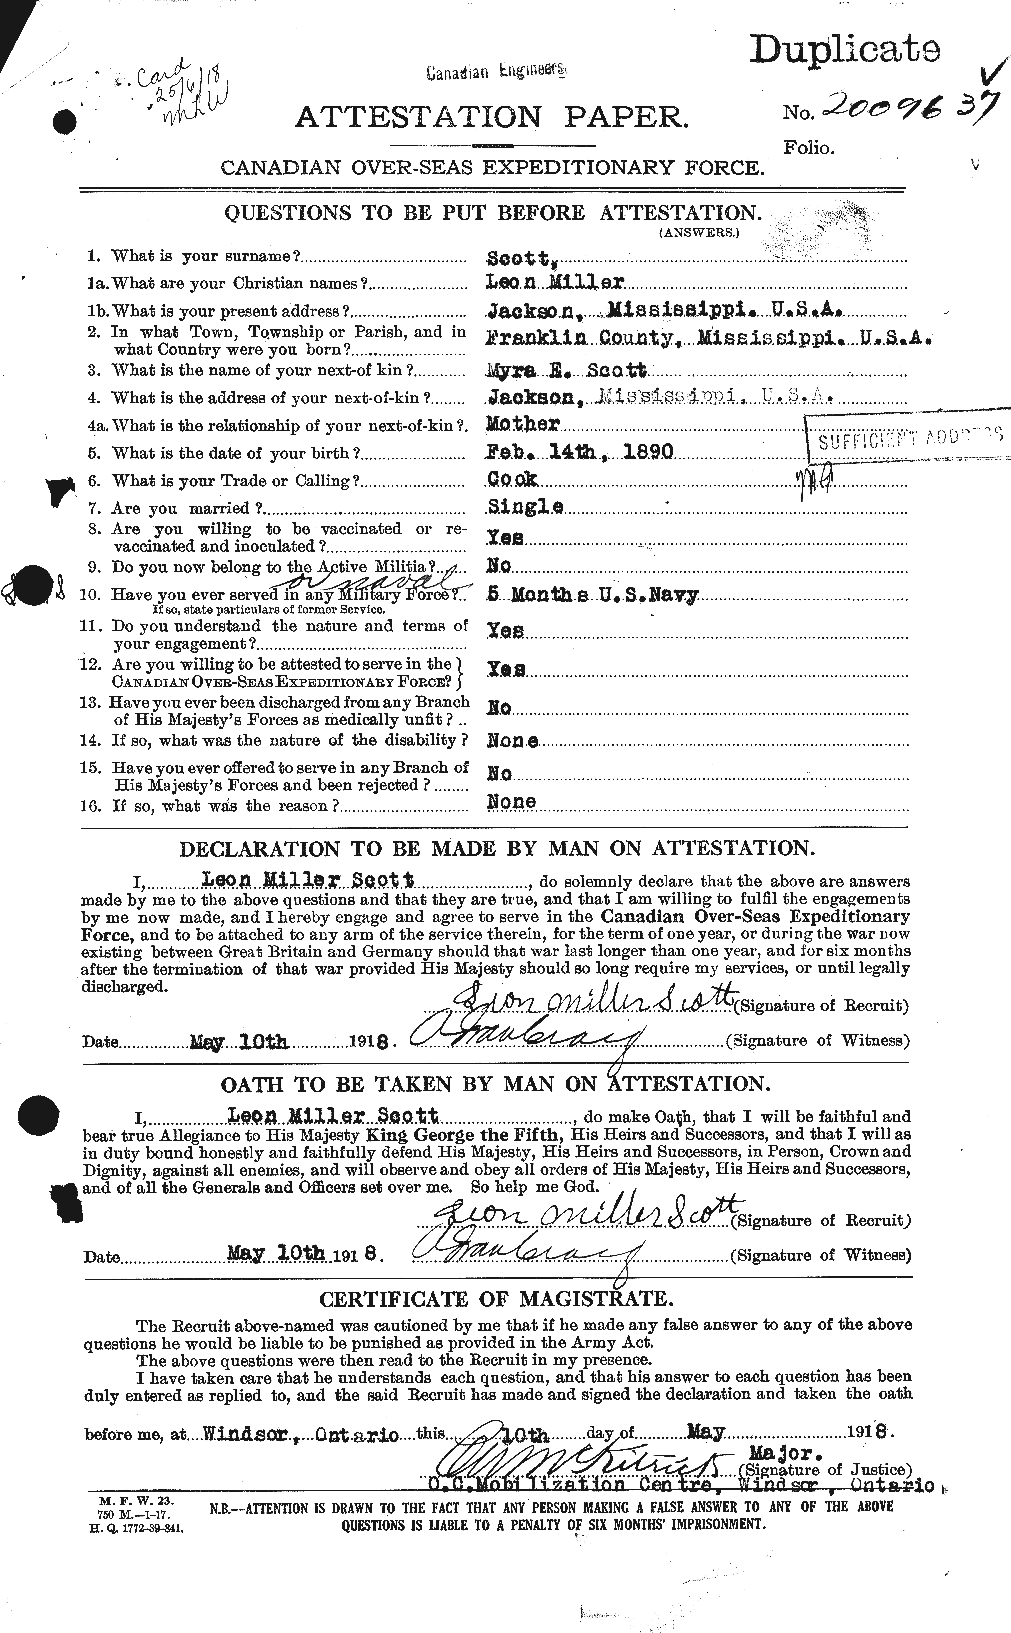 Dossiers du Personnel de la Première Guerre mondiale - CEC 084142a